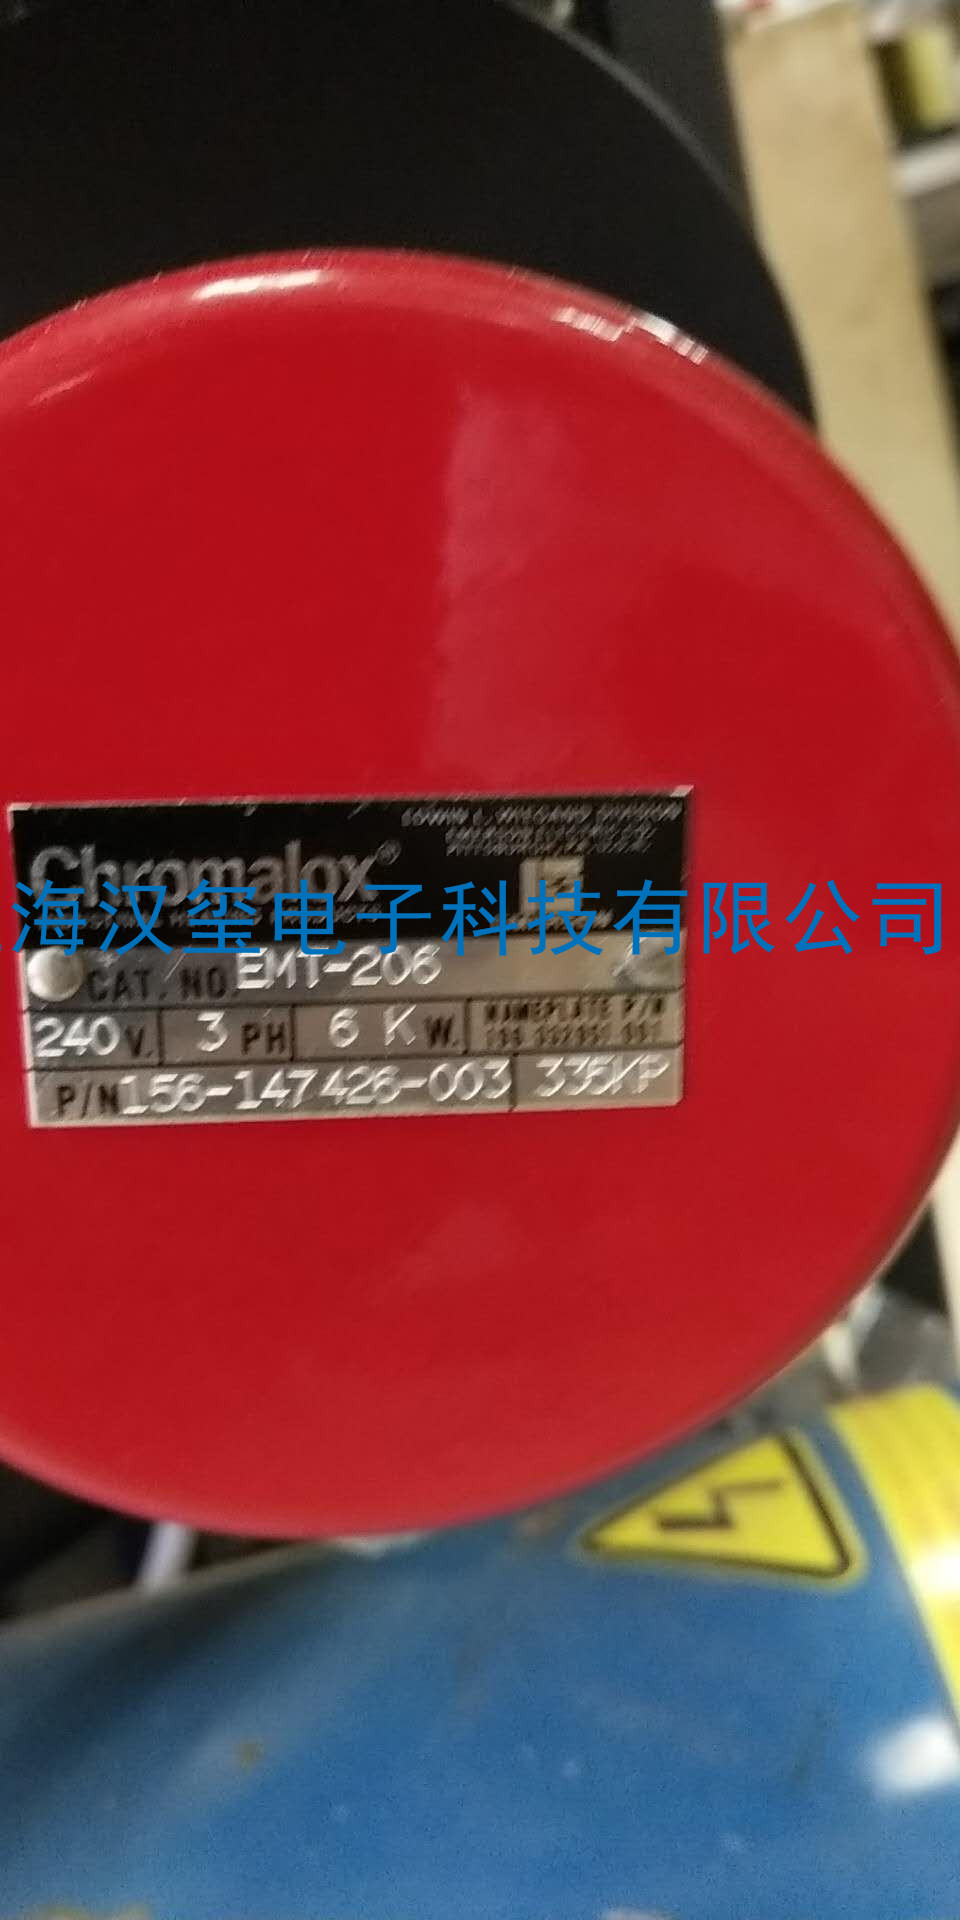 冰水机-型号CHROMALOX0914-002维修